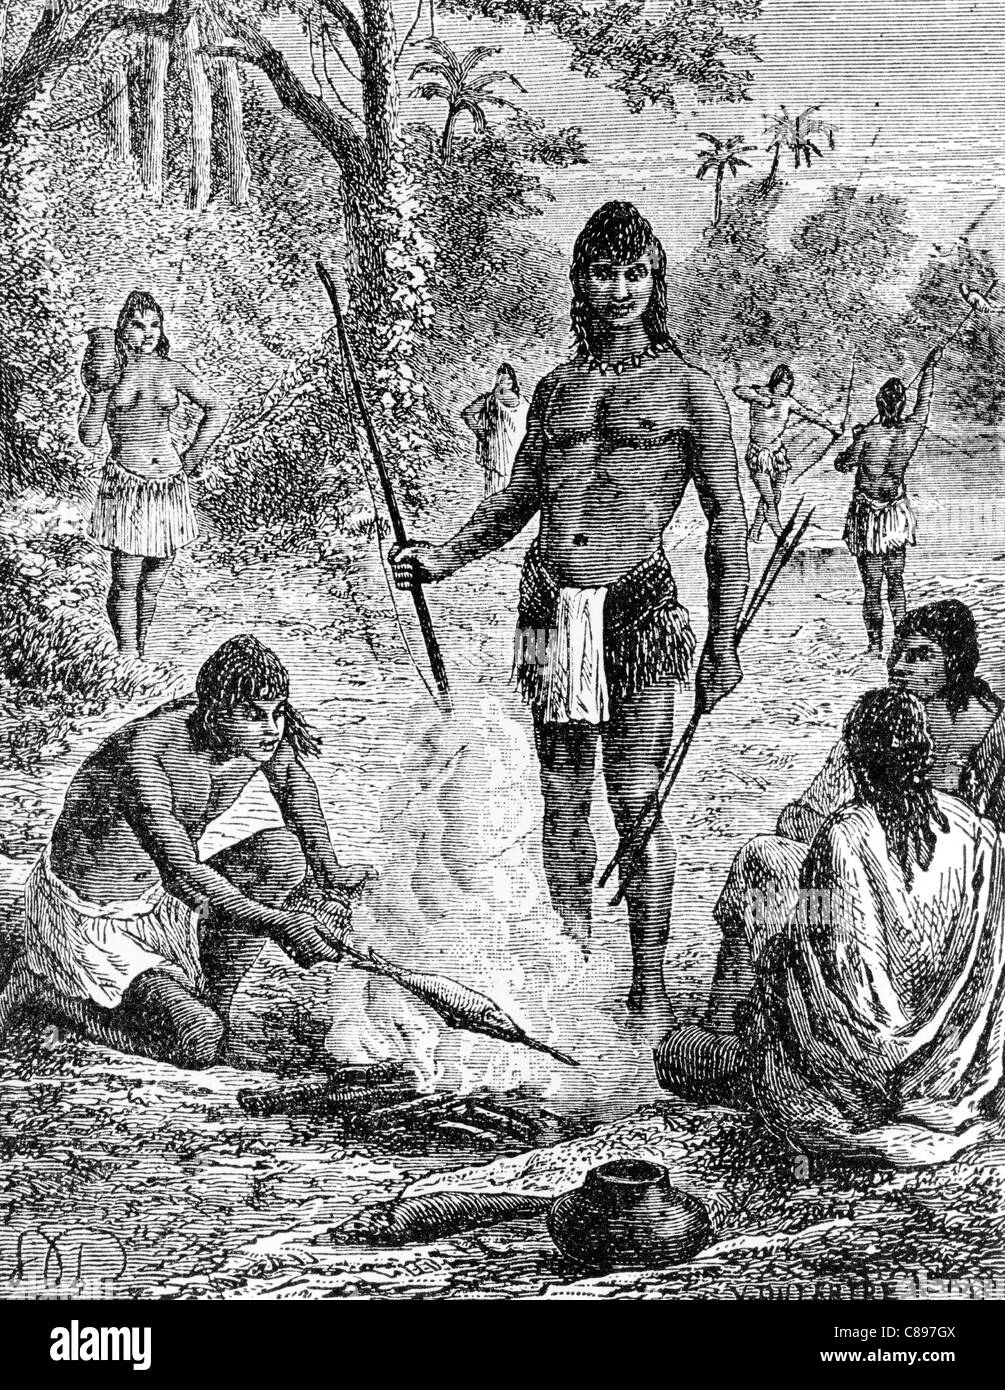 Eingeborenen des Amazonas. Inder Kochen Fisch über Lagerfeuer mit anderen Indianern Angeln mit Pfeil und Bogen Stockfoto